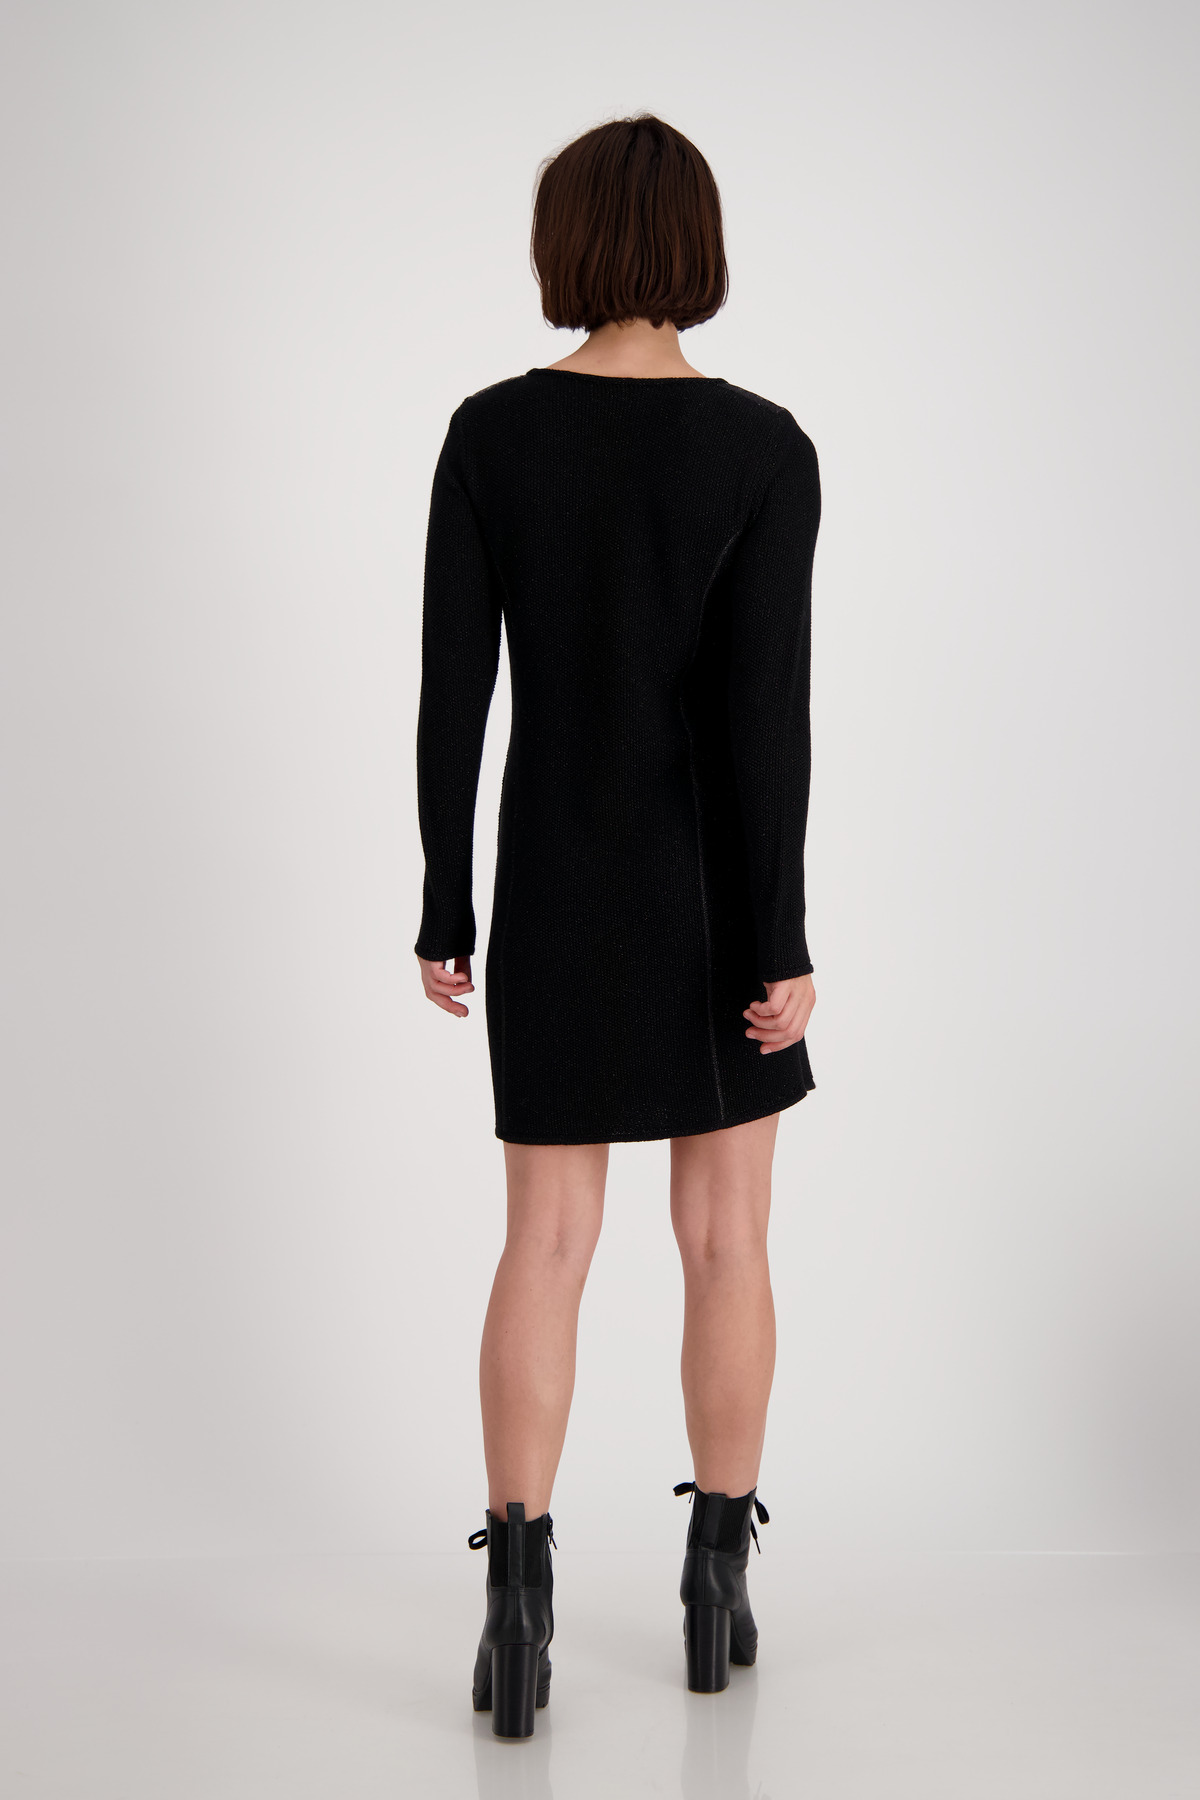 Monari Lurex Details Rundhals mode | und Kleid weber Strick mit